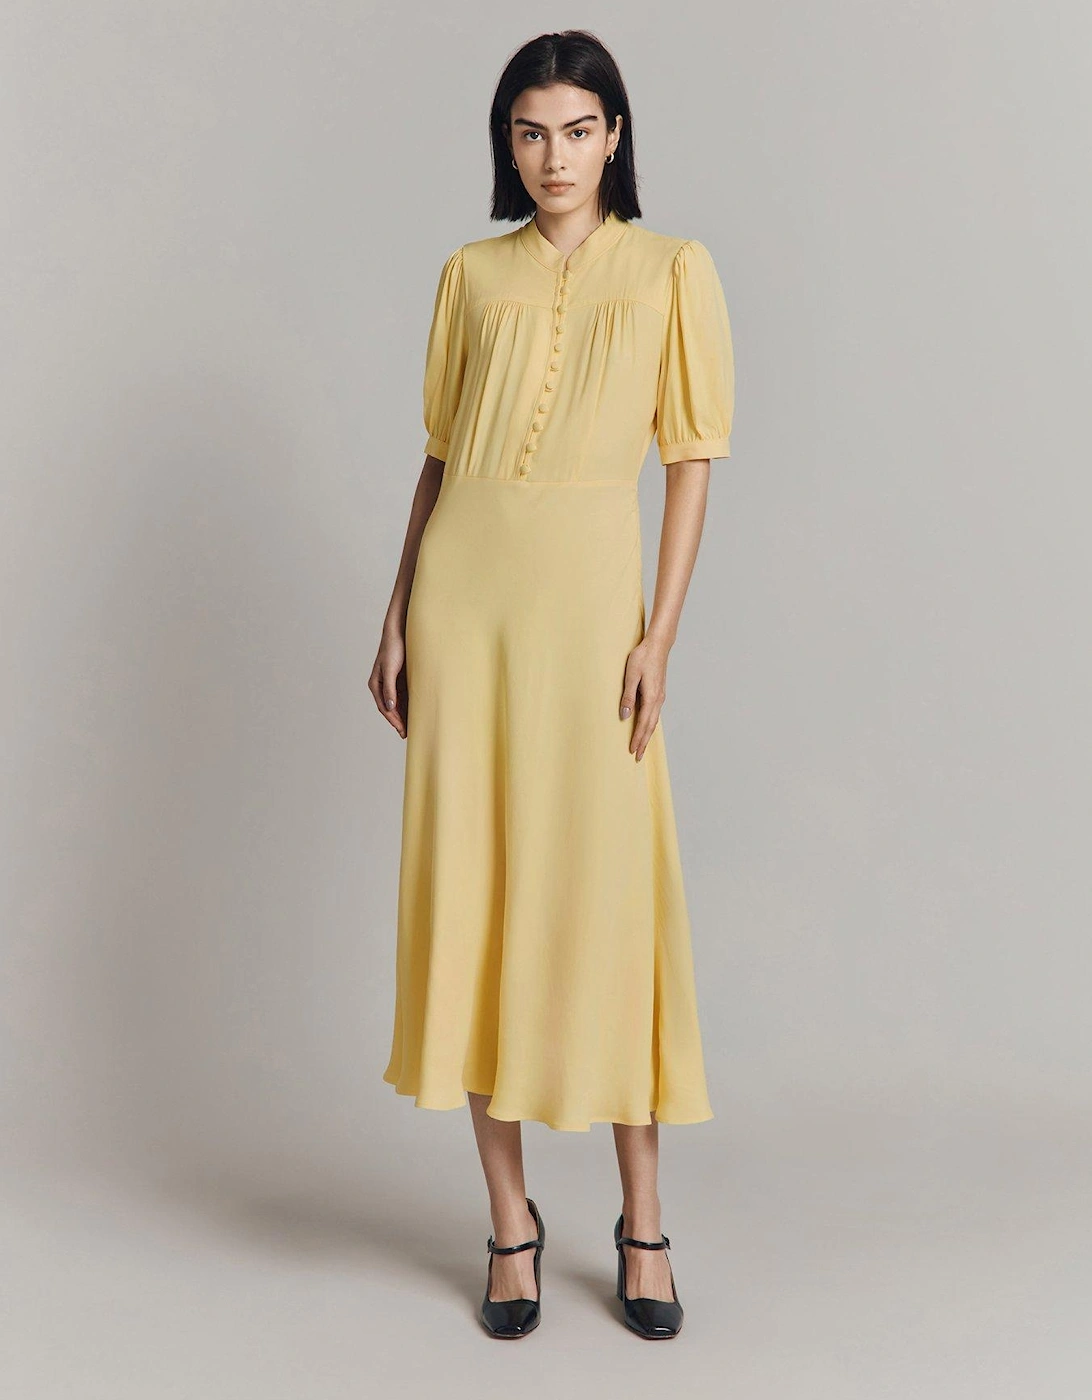 Adele Short Sleeve Midaxi Dress - Yellow, 2 of 1